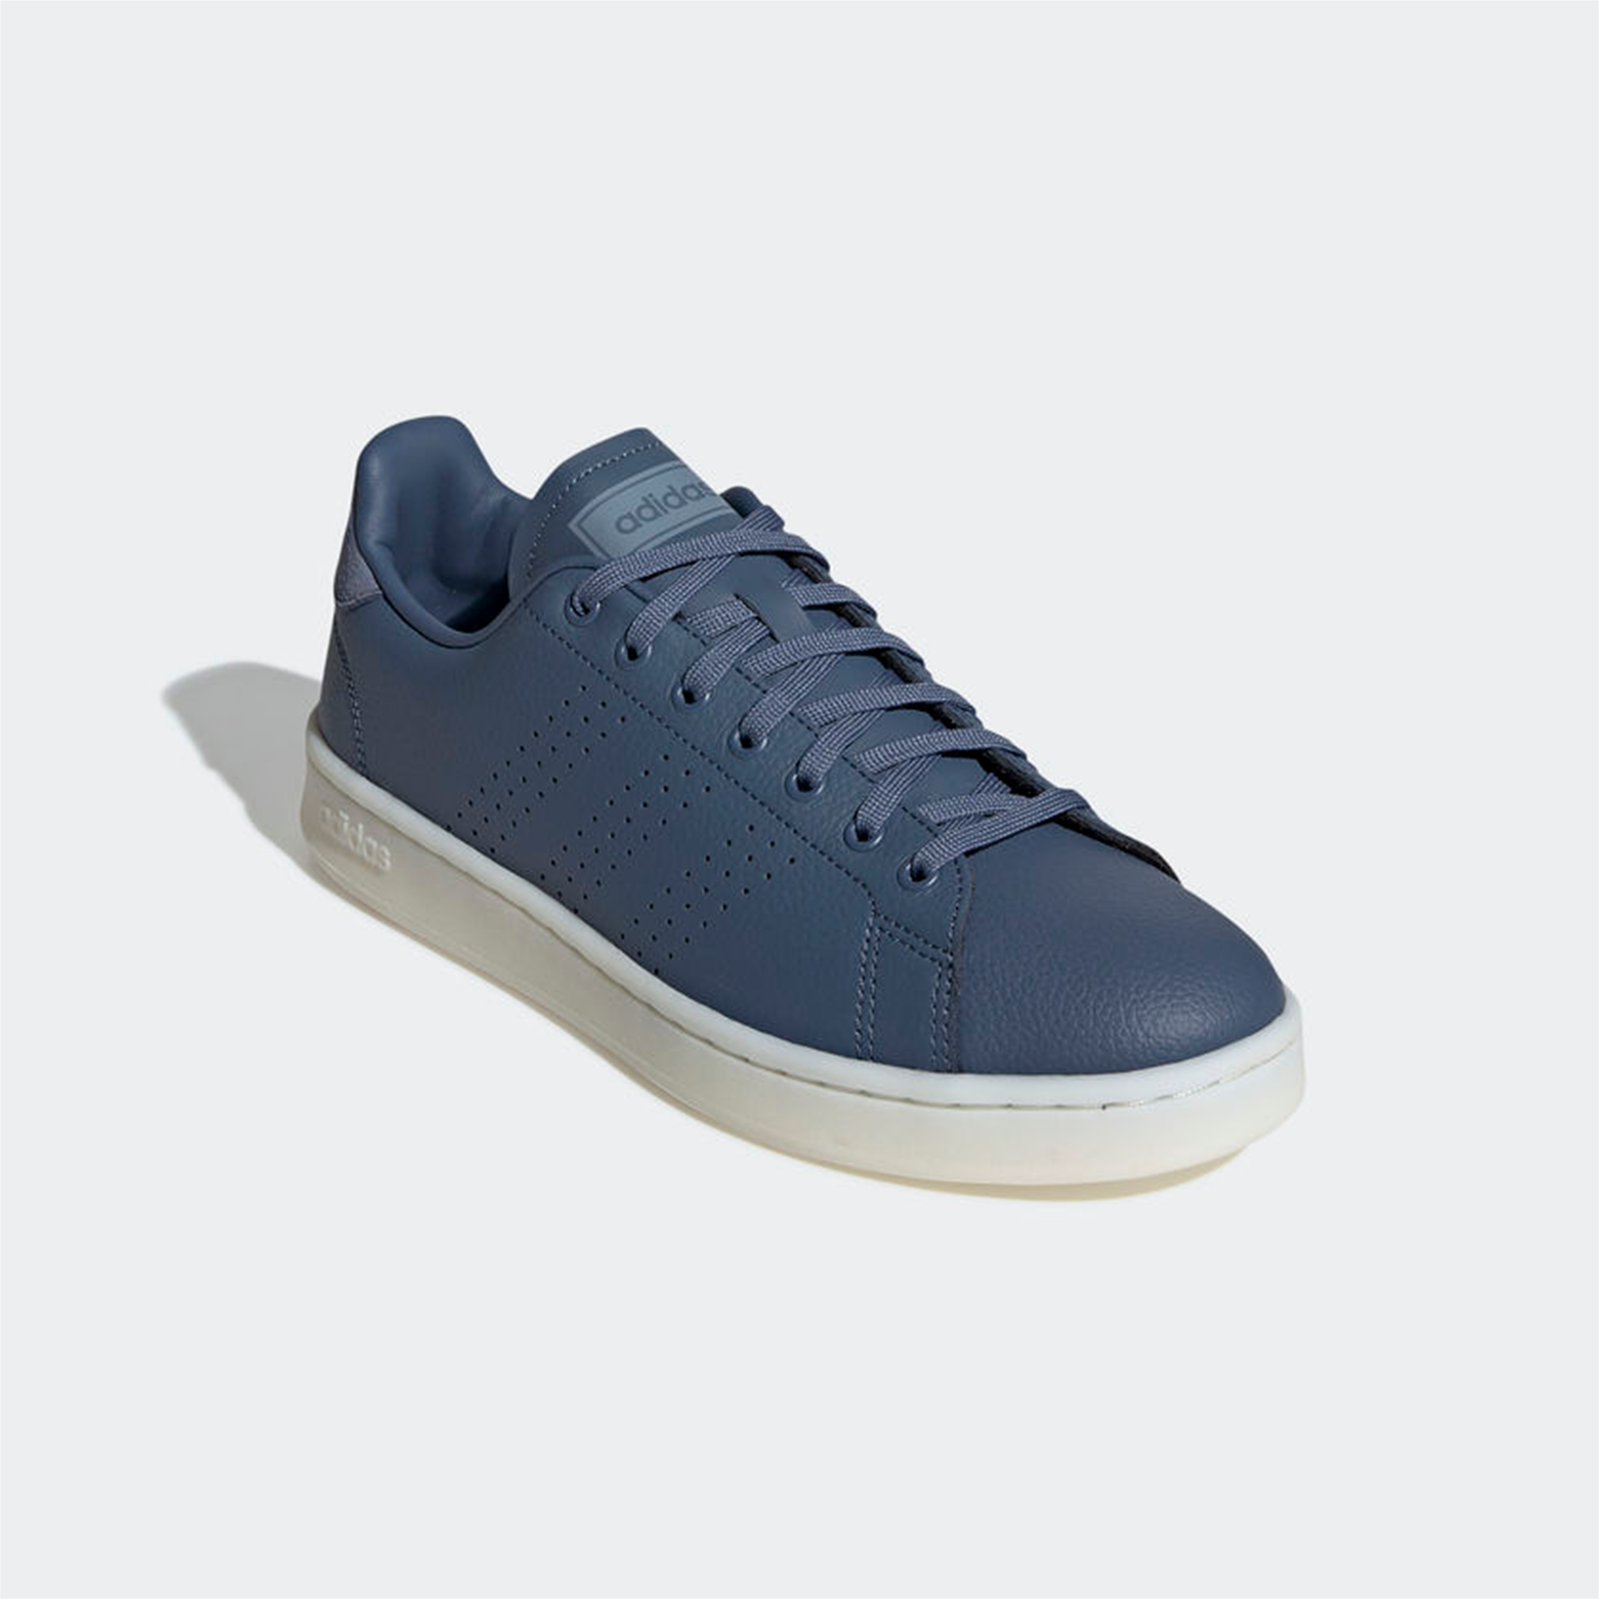 Scarpette Adidas advantage F36993 colore blu chiaro listino € 69,90 | eBay